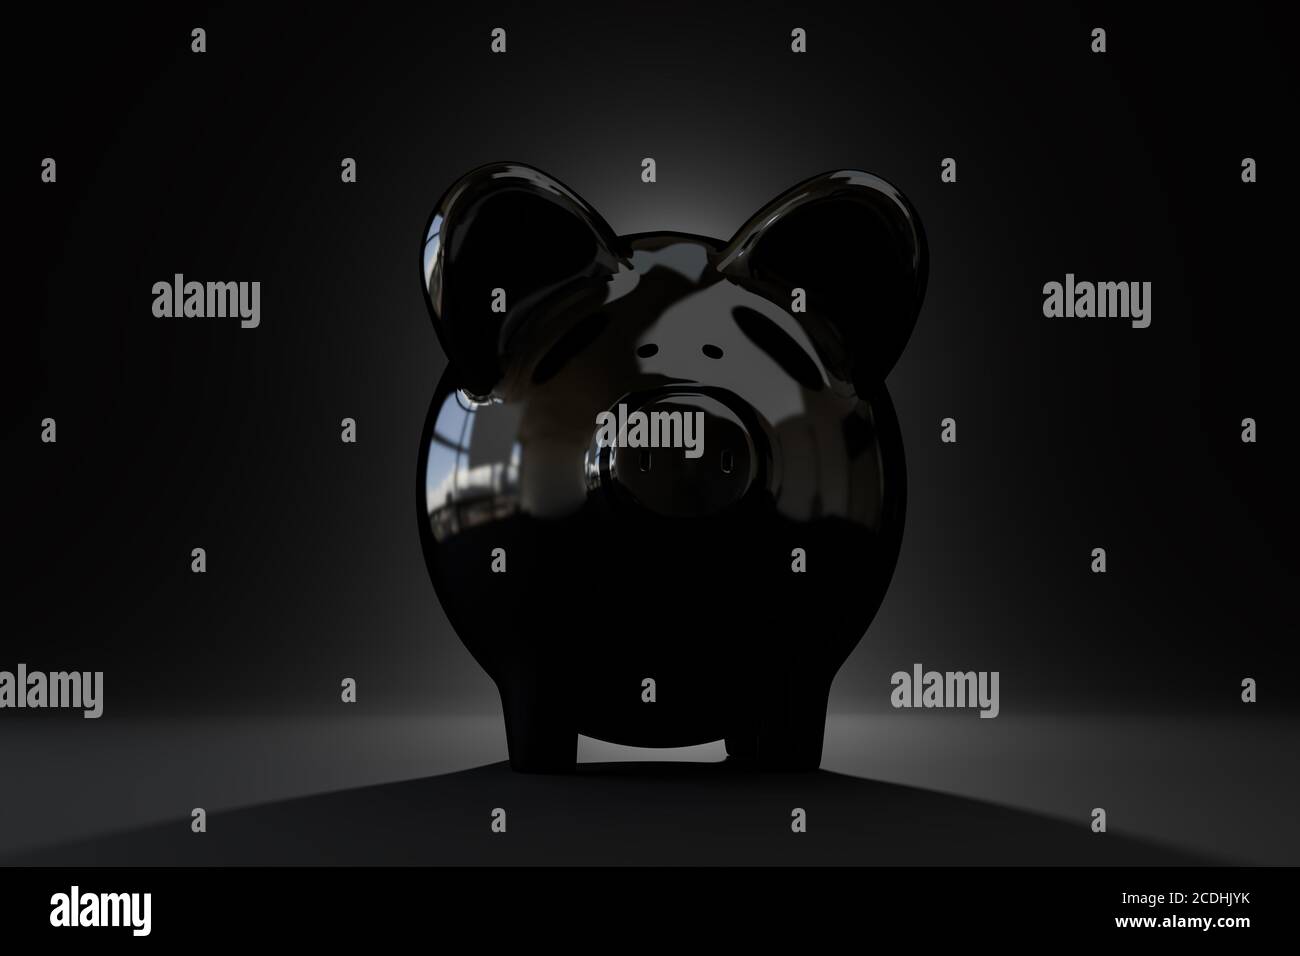 Sparkonzept Sparschwein: Low-Key-Bild eines schwarzen Sparschweines auf schwarzem Hintergrund. Beleuchtung von hinten. Stockfoto